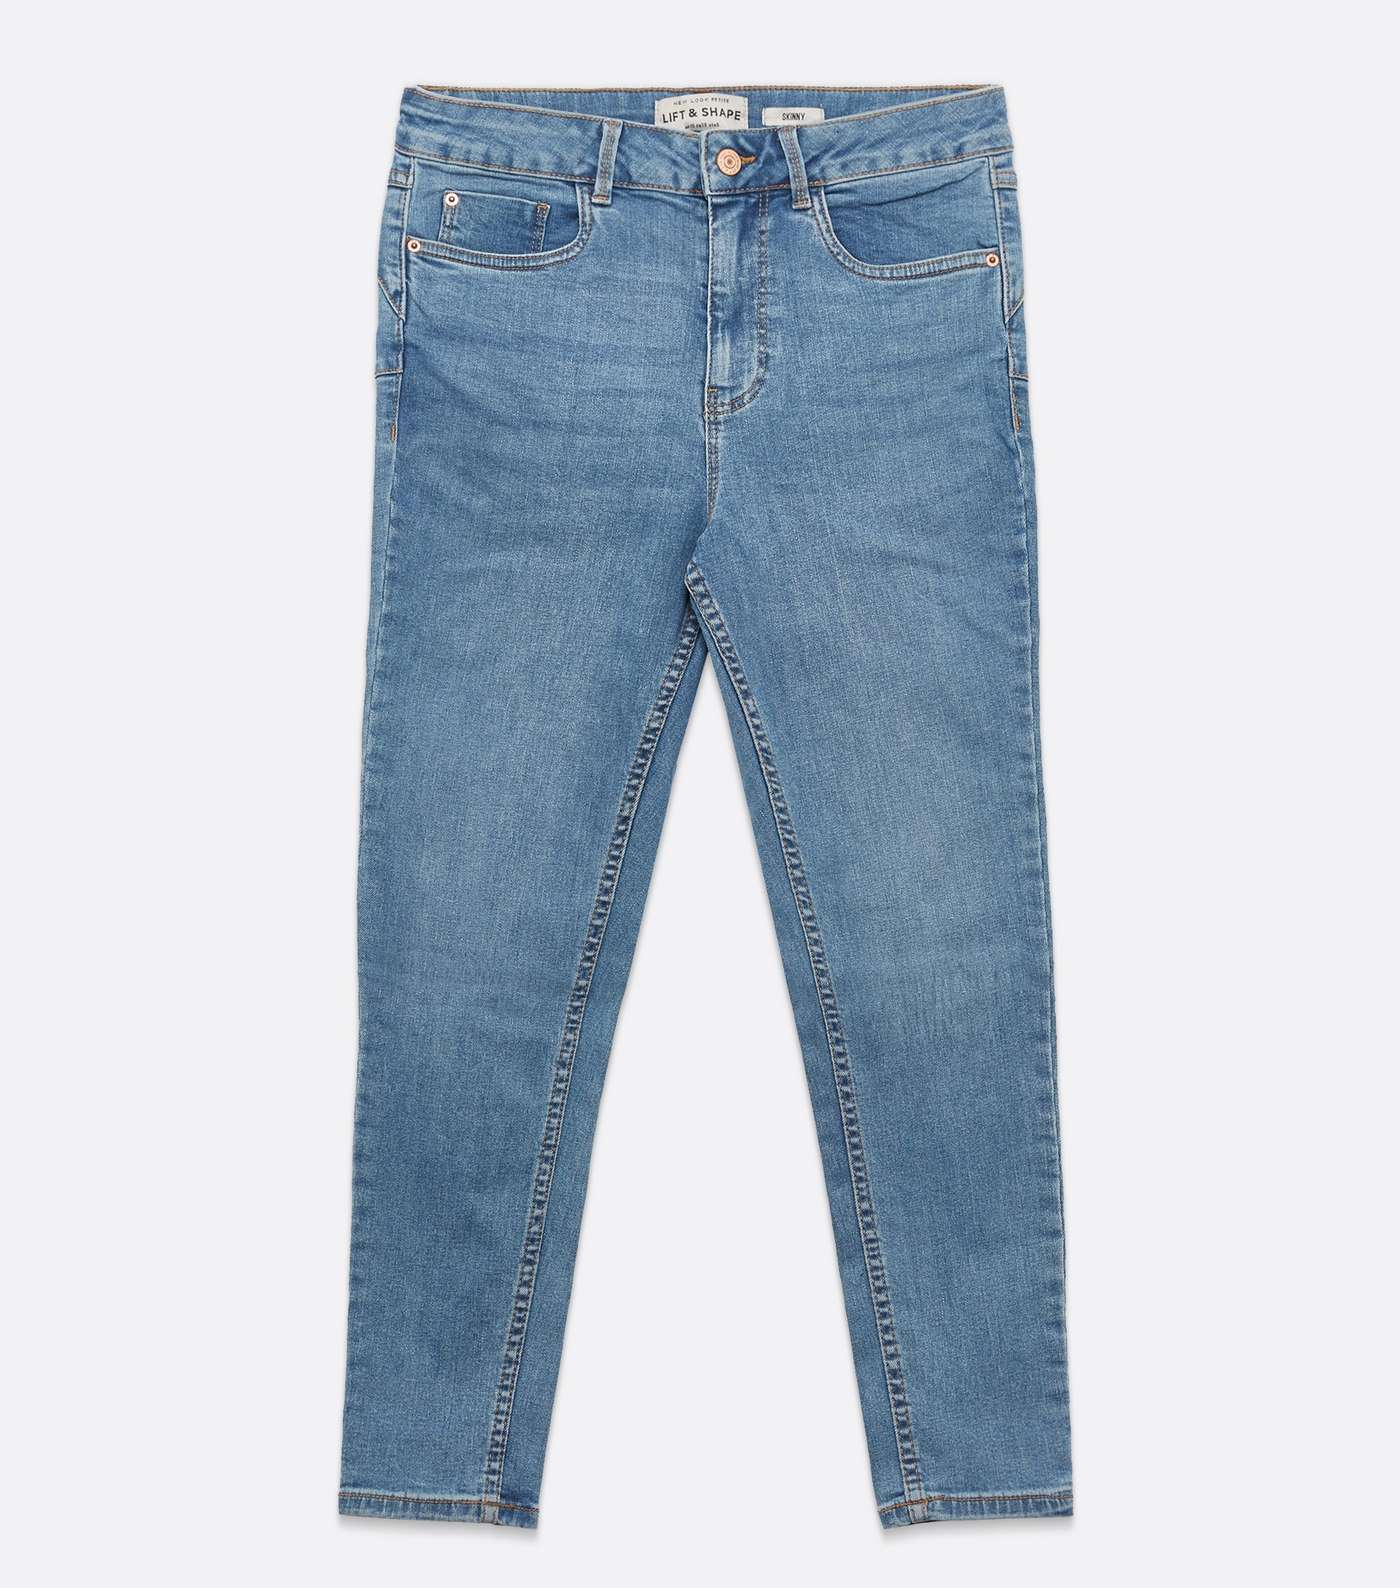 Petite Blue Lift & Shape Jenna Skinny Jeans Image 5